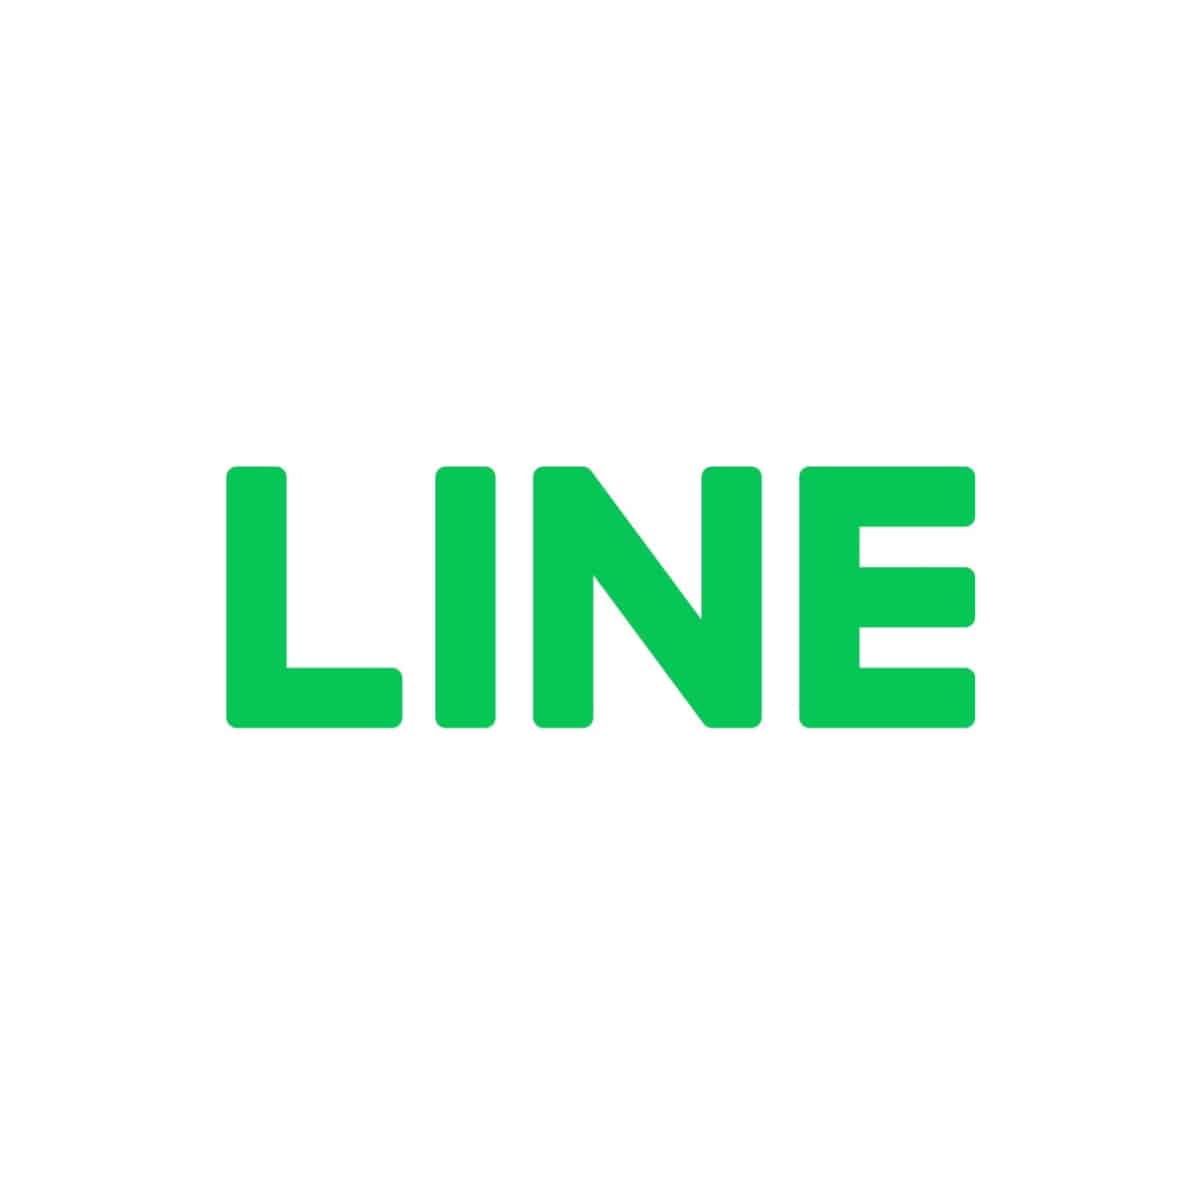 LINE ประเทศไทย Smart Country 